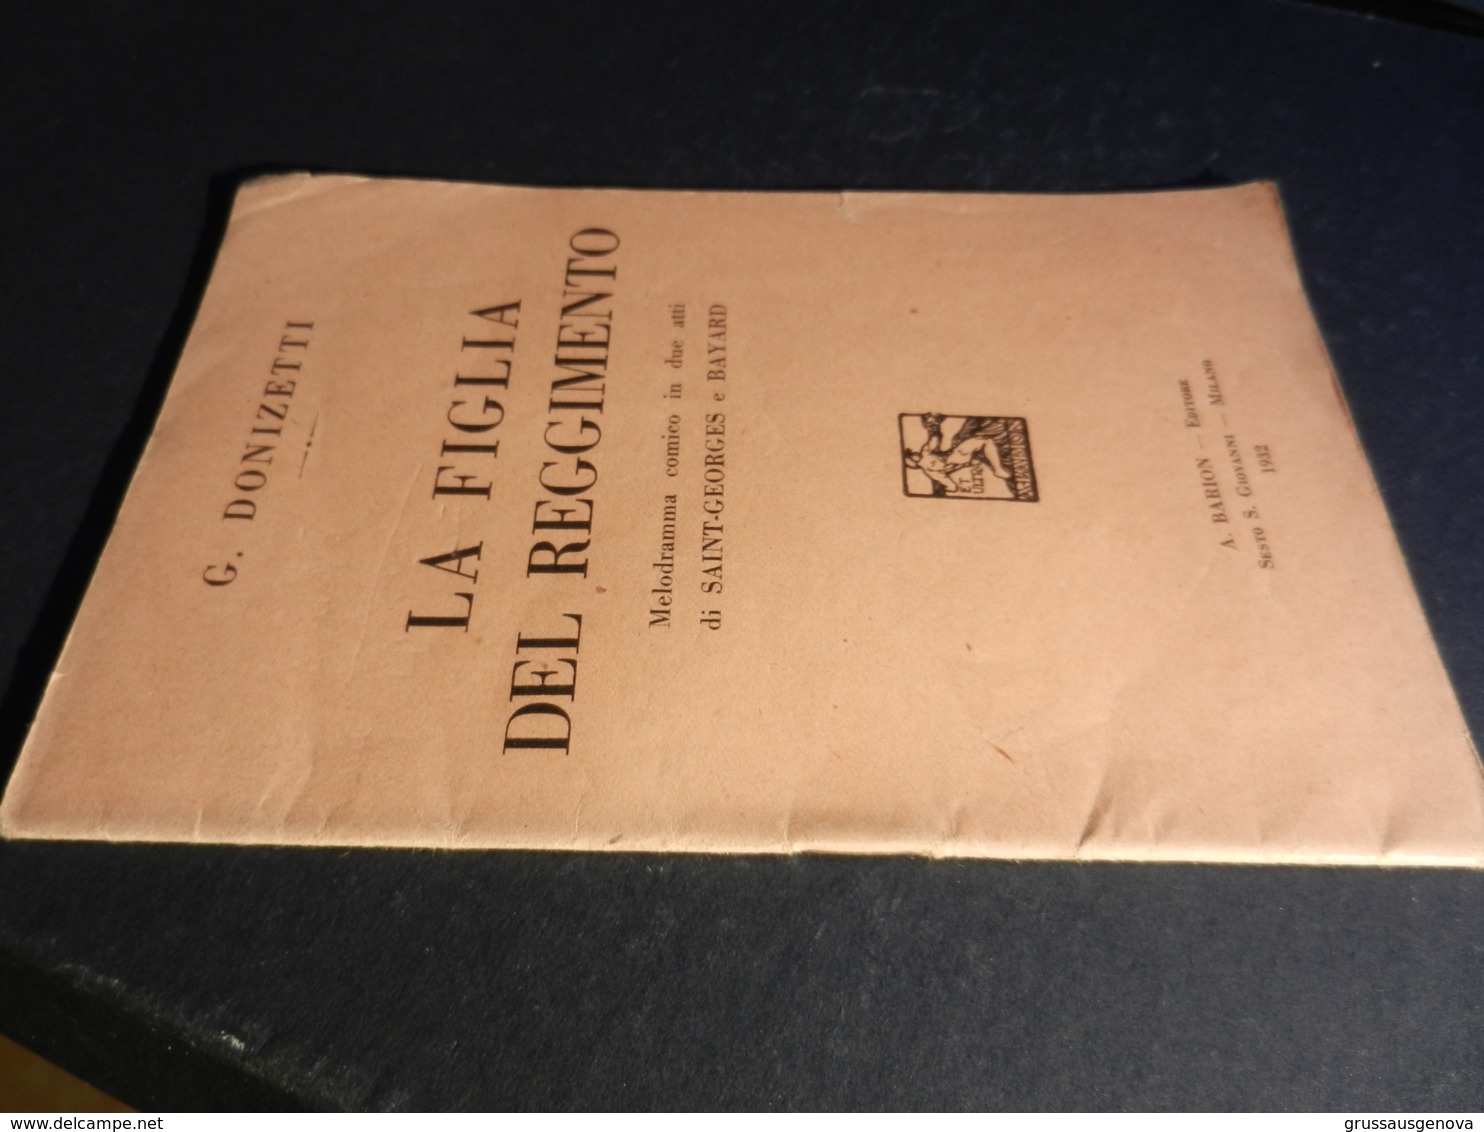 9) DONIZETTI LA FIGLIA DEL REGGIMENTO LIBRETTO D'OPERA EDIZIONE BARION 1932 - Opera